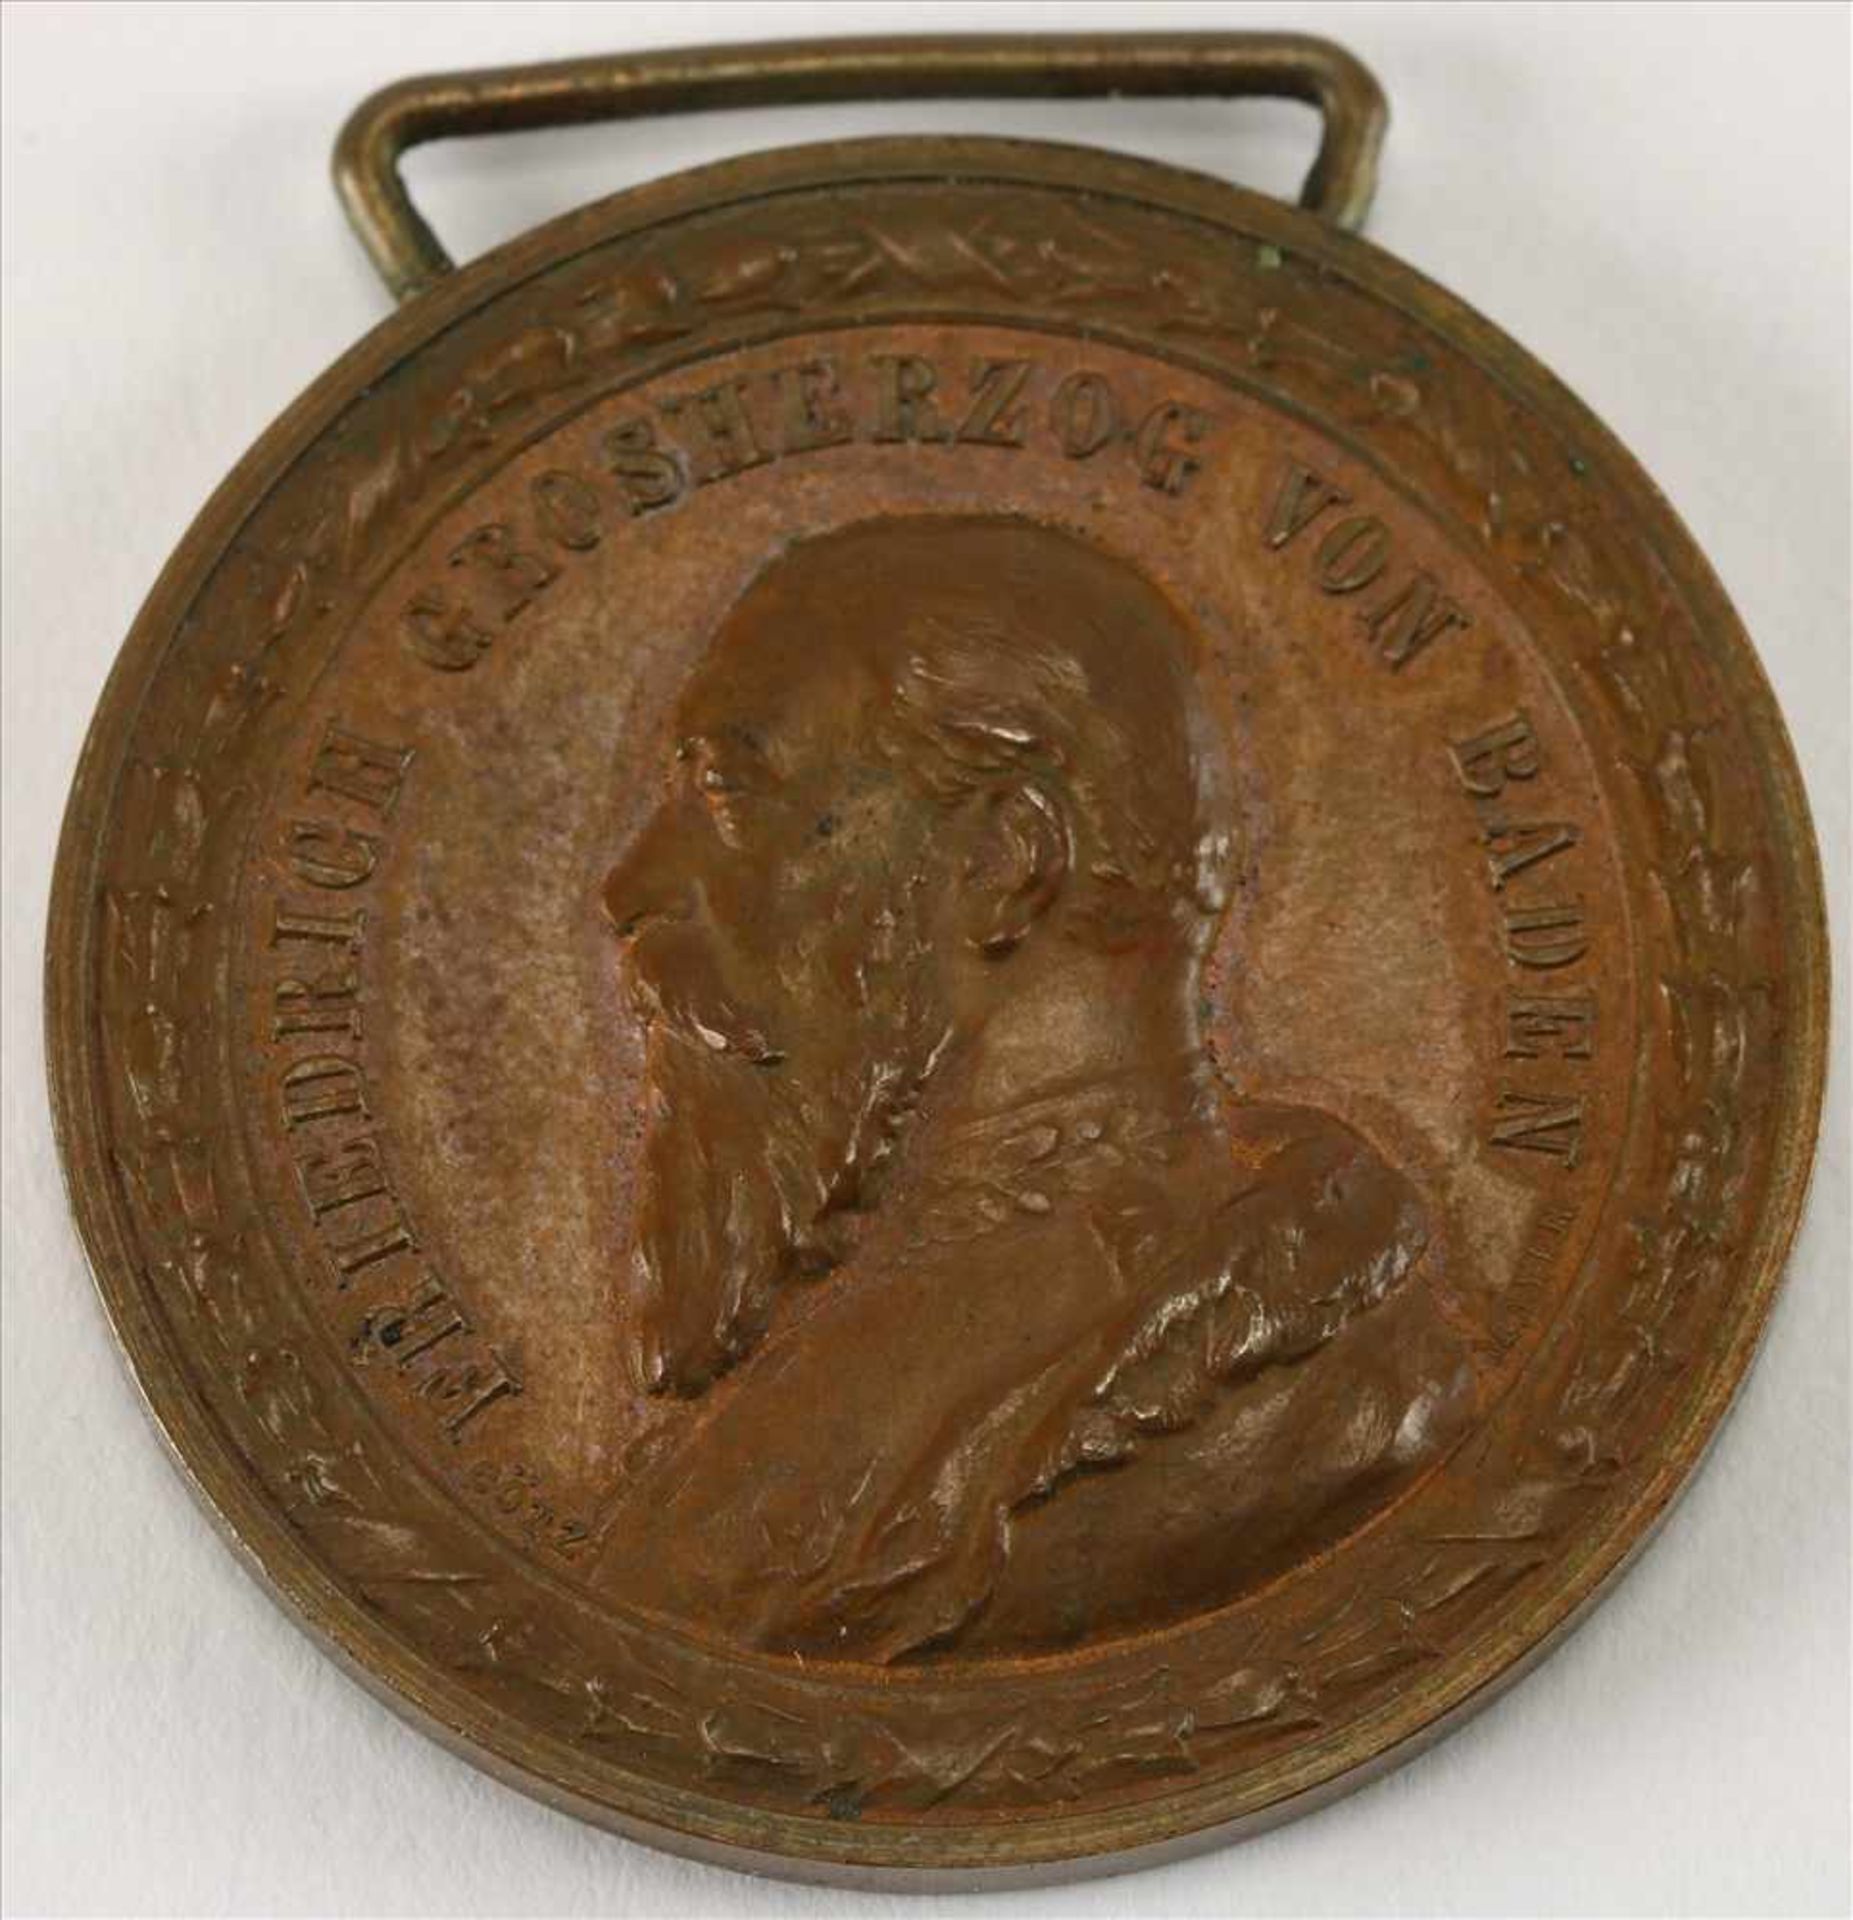 VerdienstmedailleFriedrich Großherzog von Baden für treue Arbeit. In Bronze in originaler Schatulle. - Bild 2 aus 3